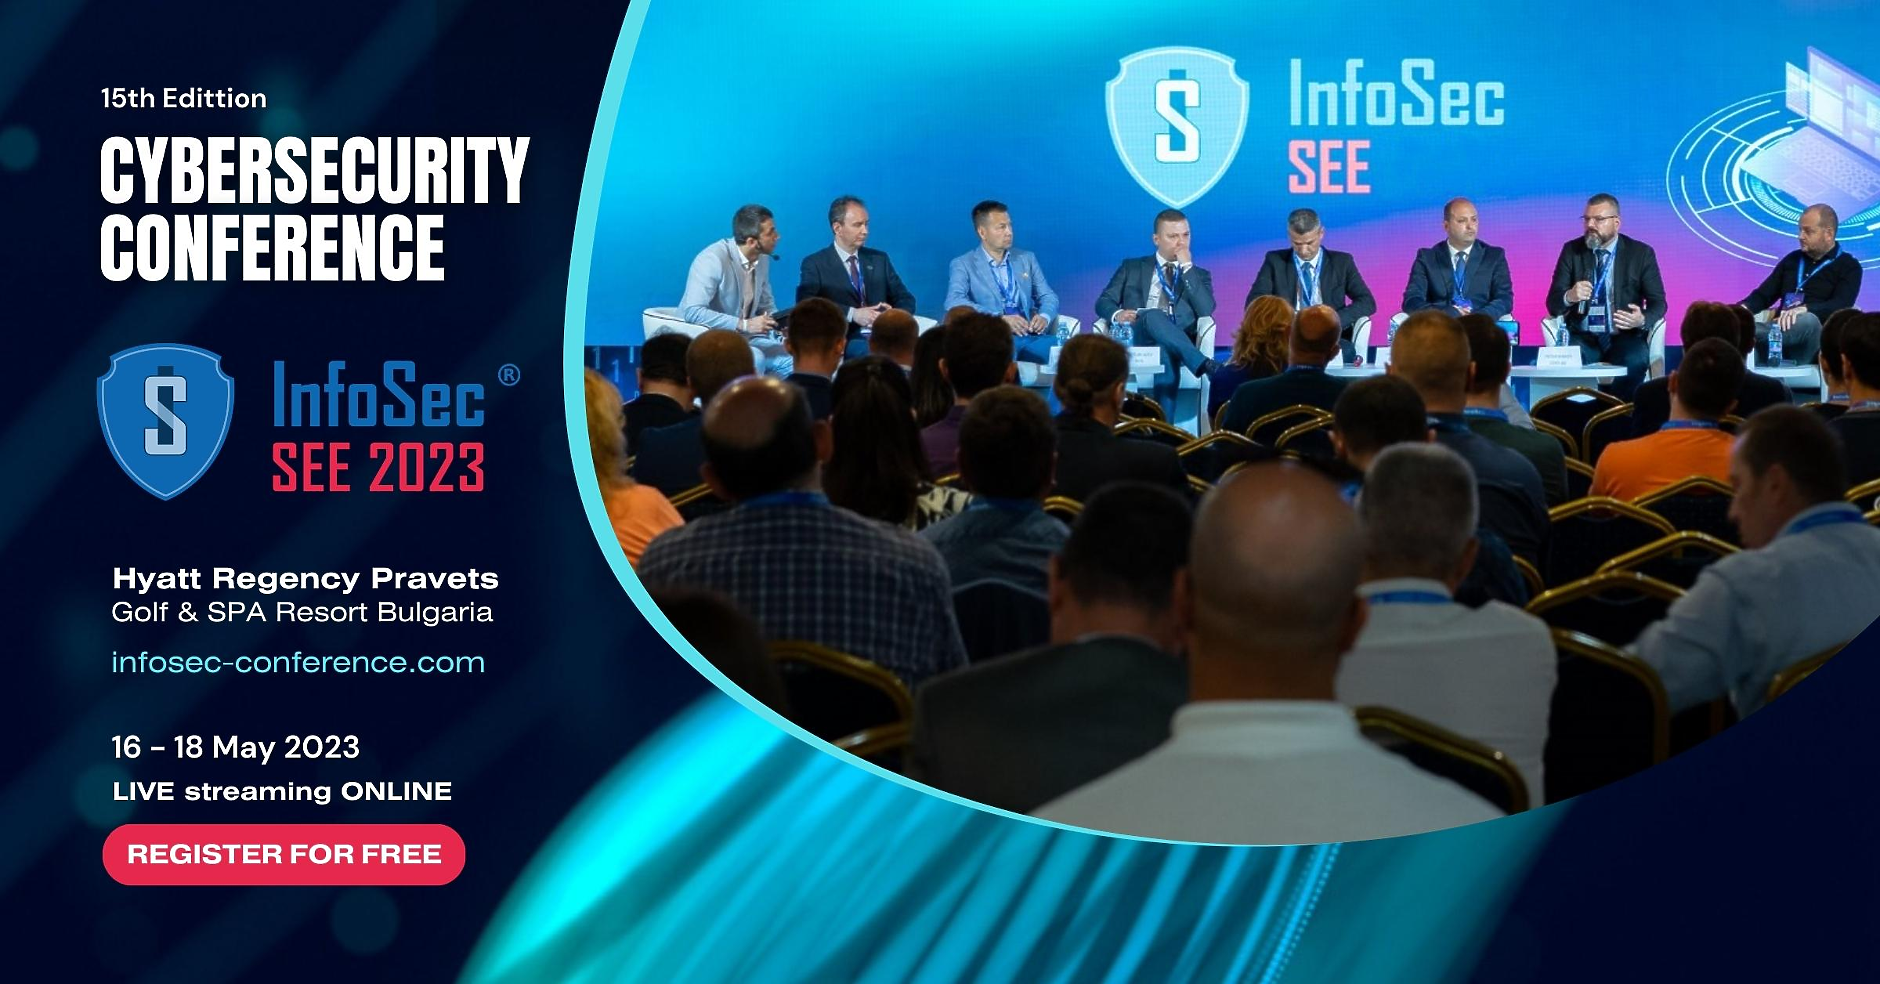 Водещата Конференция по киберсигурност InfoSec SEE 2023 - отново в България с богата програма, много изненади и ключови международни експерти